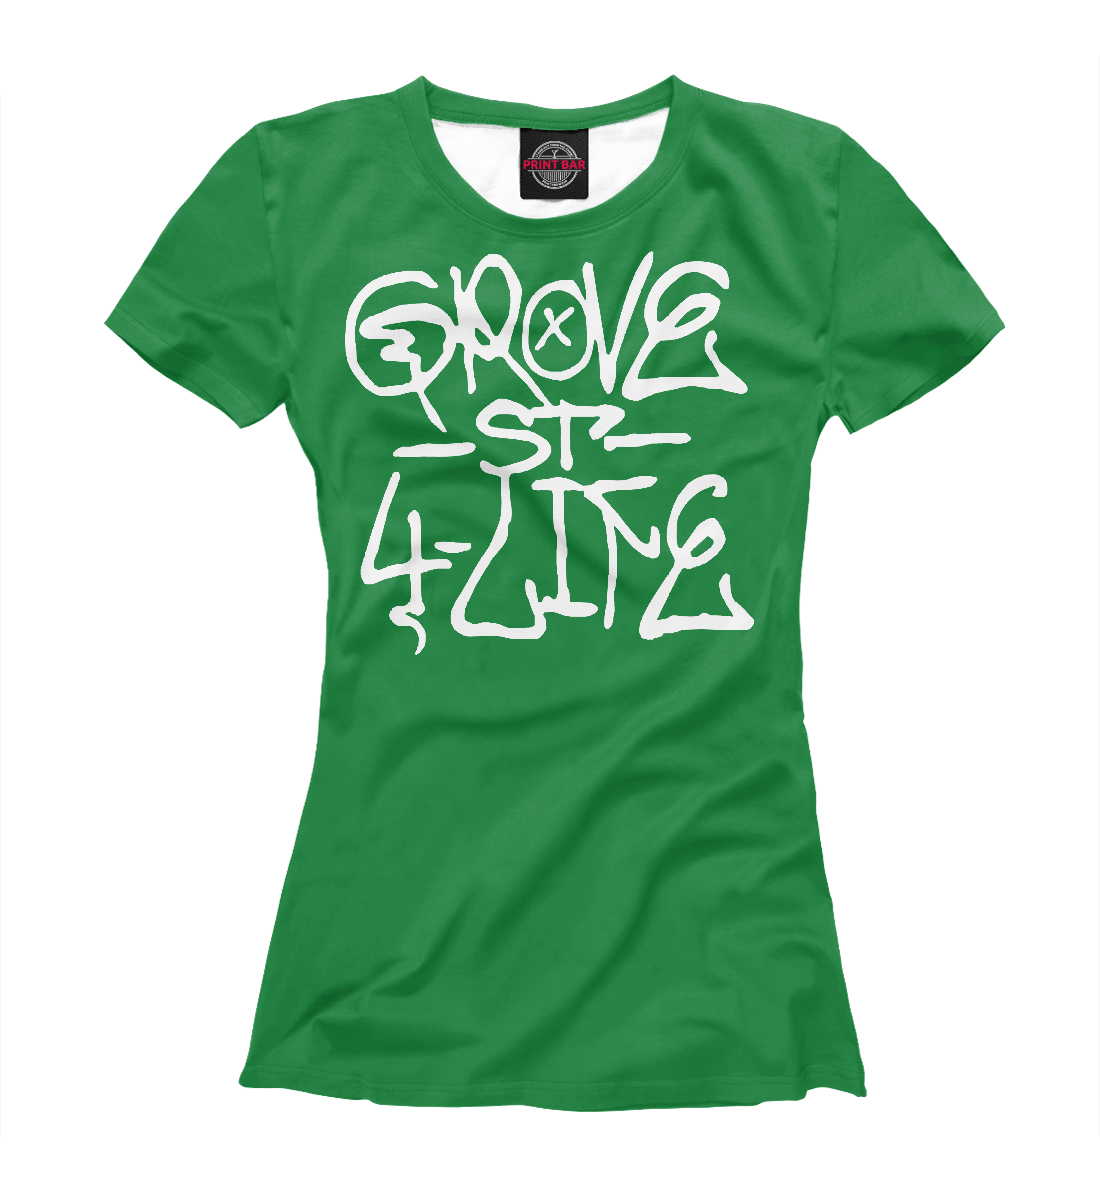 Футболка Grove street4life для девочек, артикул: APD-472102-fut-1mp